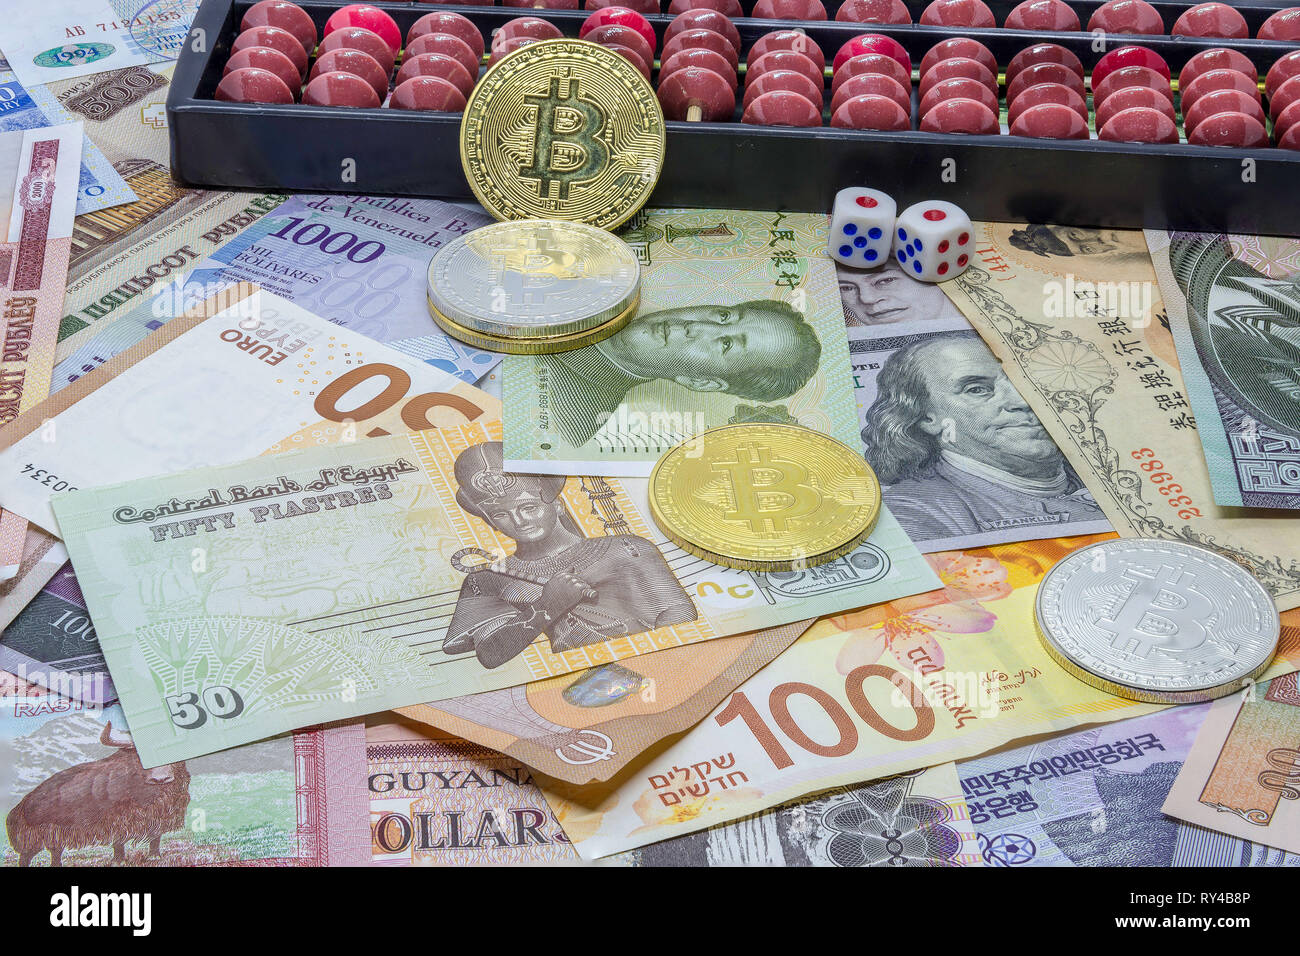 La valuta estera (Forex) - gli investimenti o speculazioni? Foto Stock